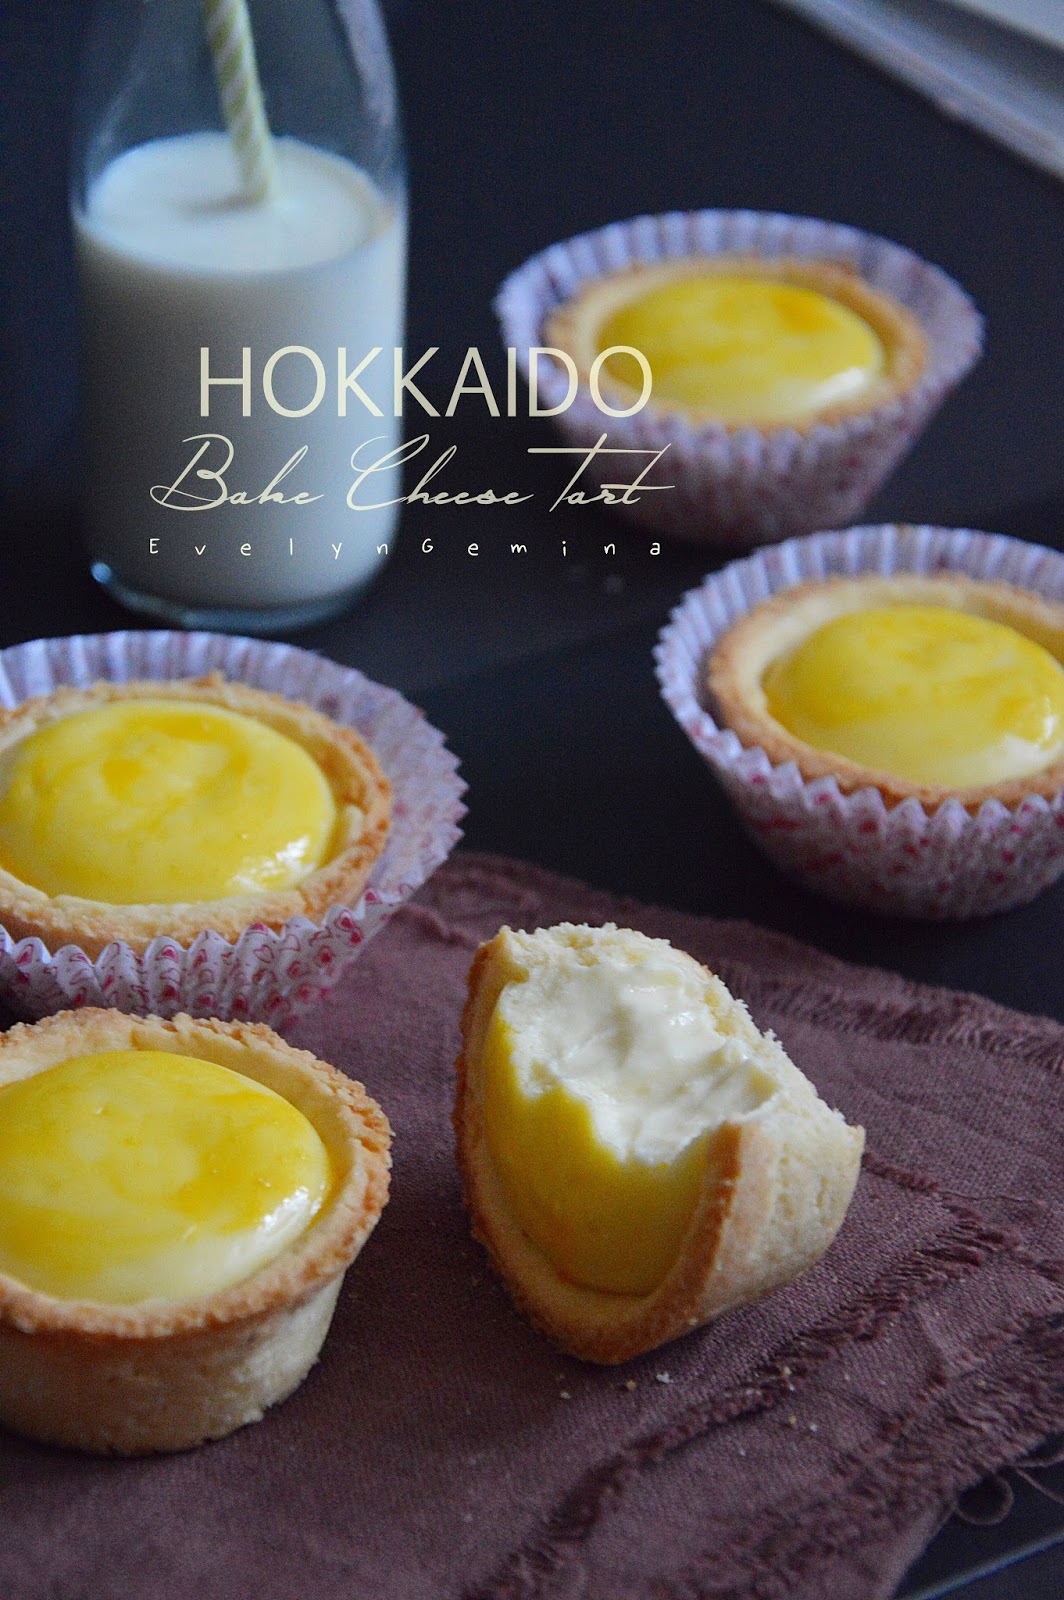 HOKKAIDO BAKE CHEESE TART